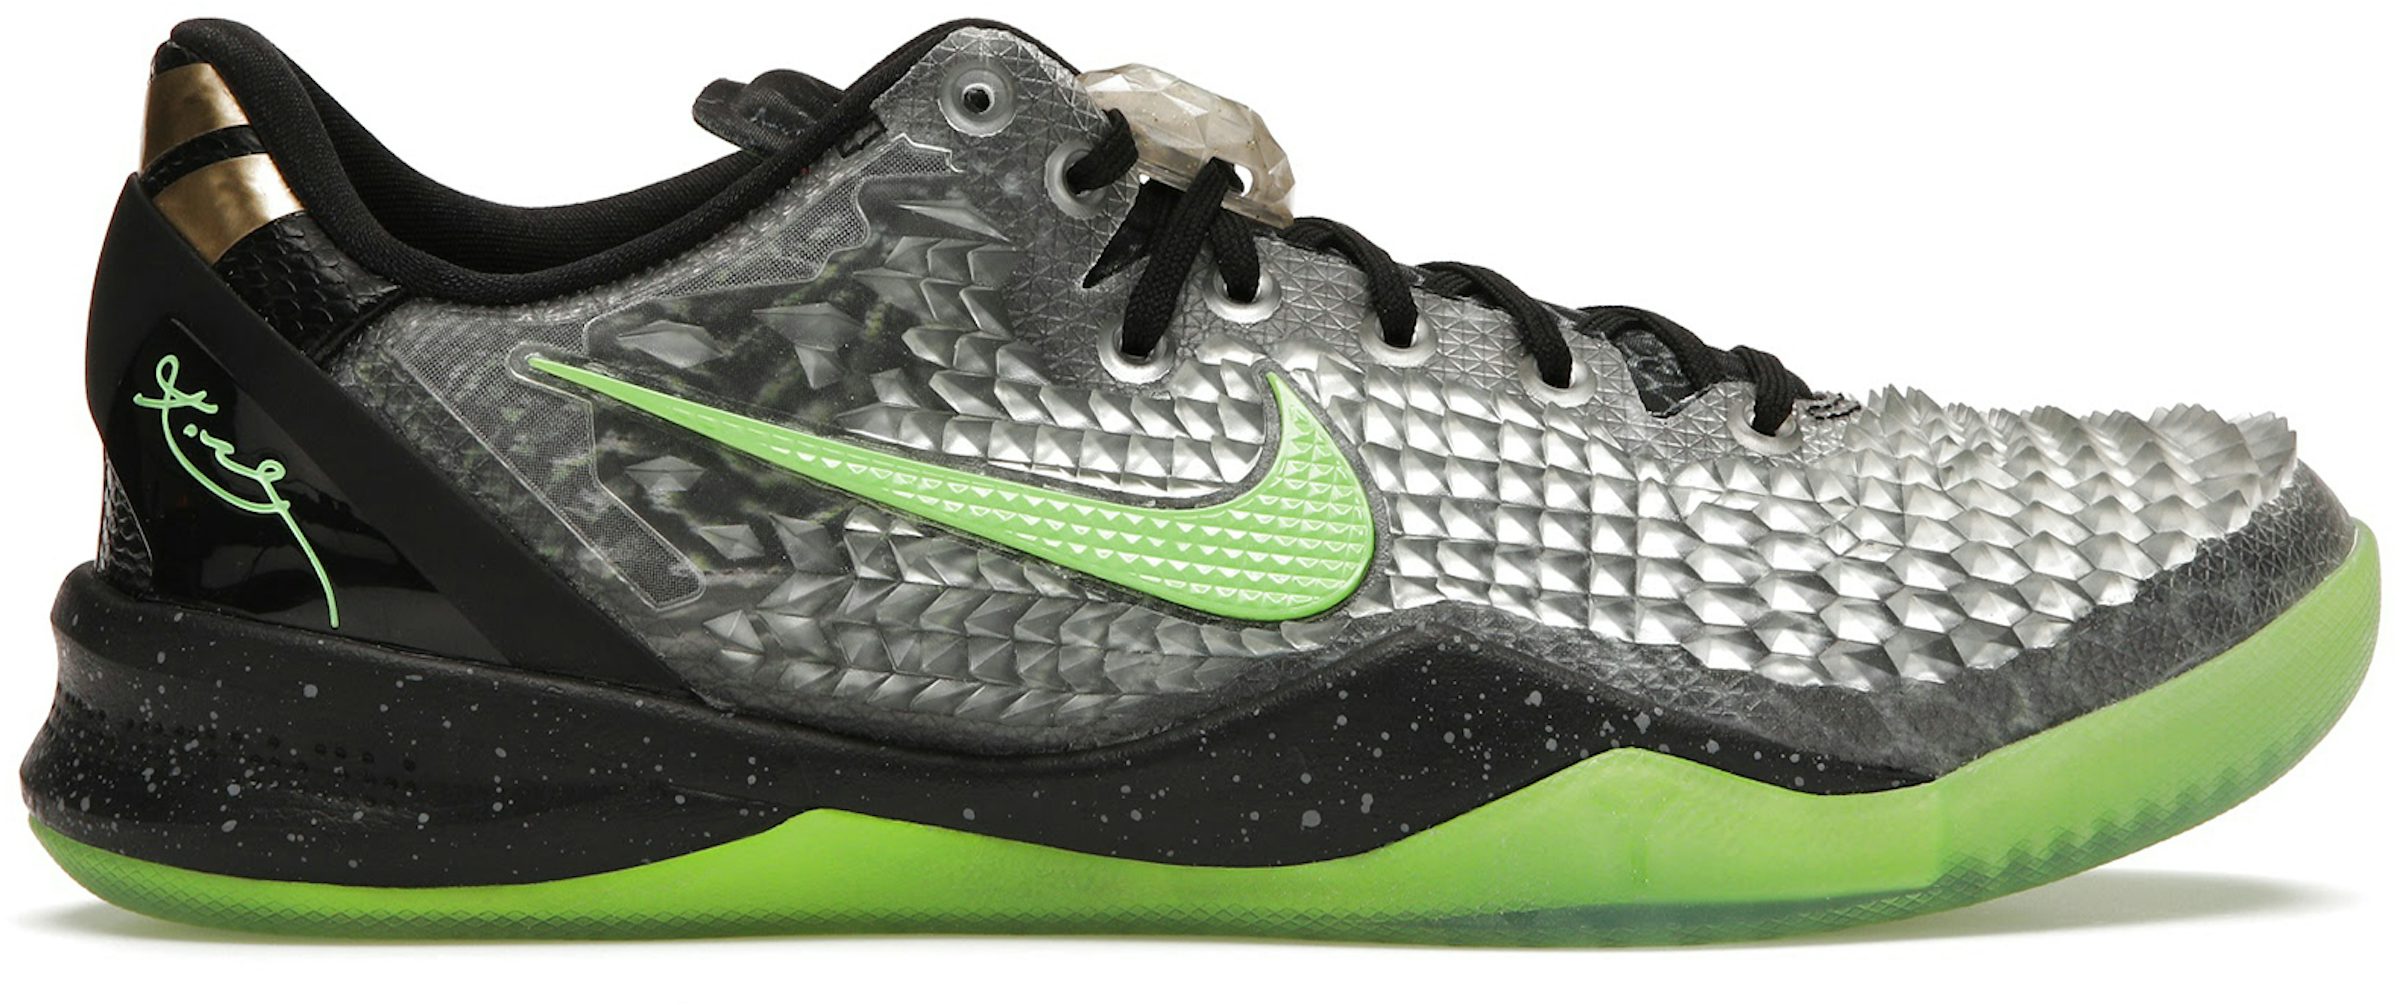 Nike Kobe 8 EXT Year of the Snake - Black - Metallic Silver